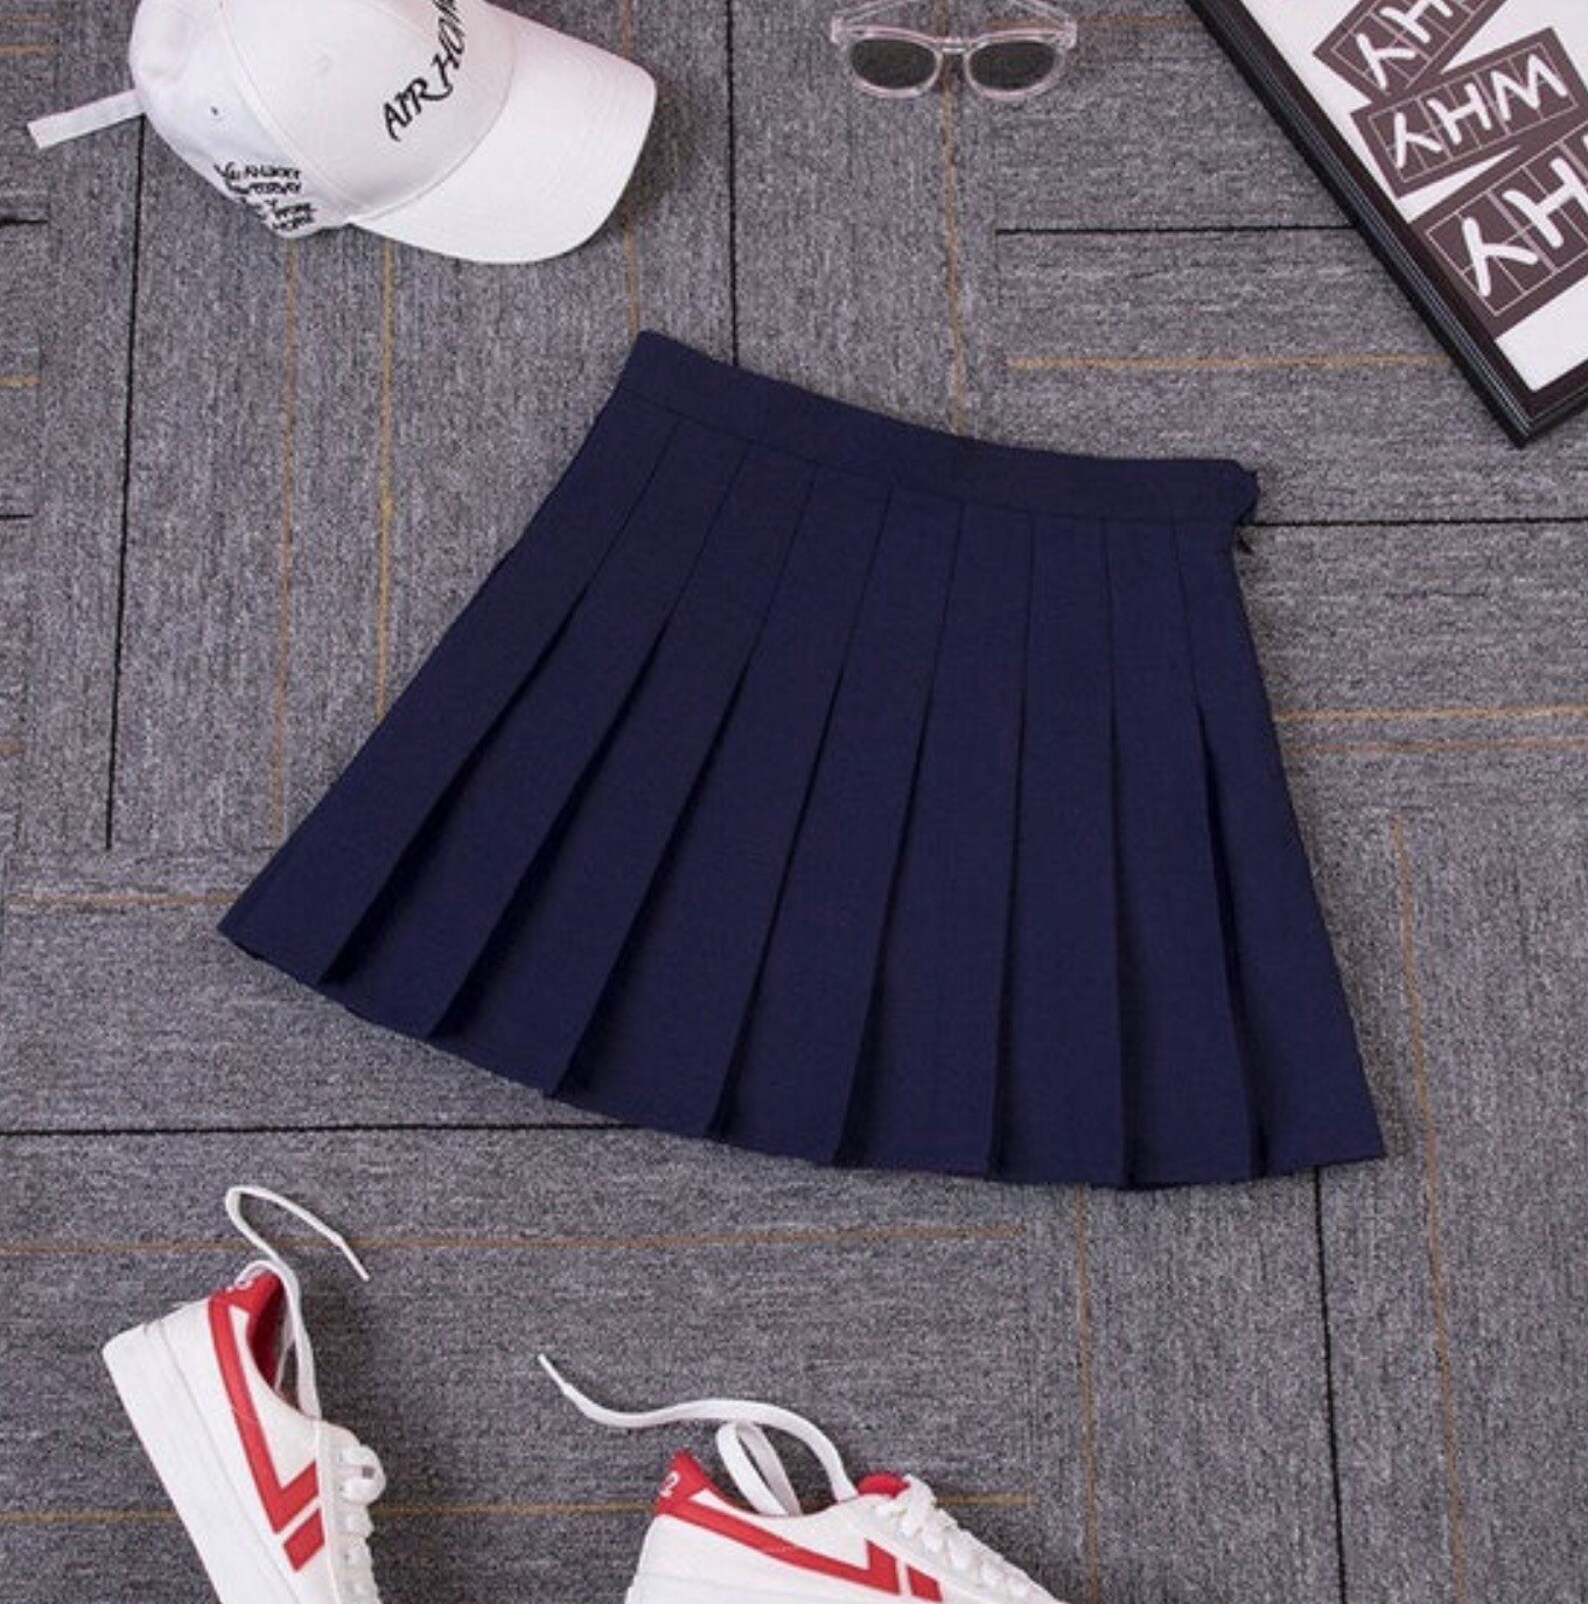 Schoolgirl Pleated Tennis Skirt Kawaii Retro Skirt Vintage | Etsy